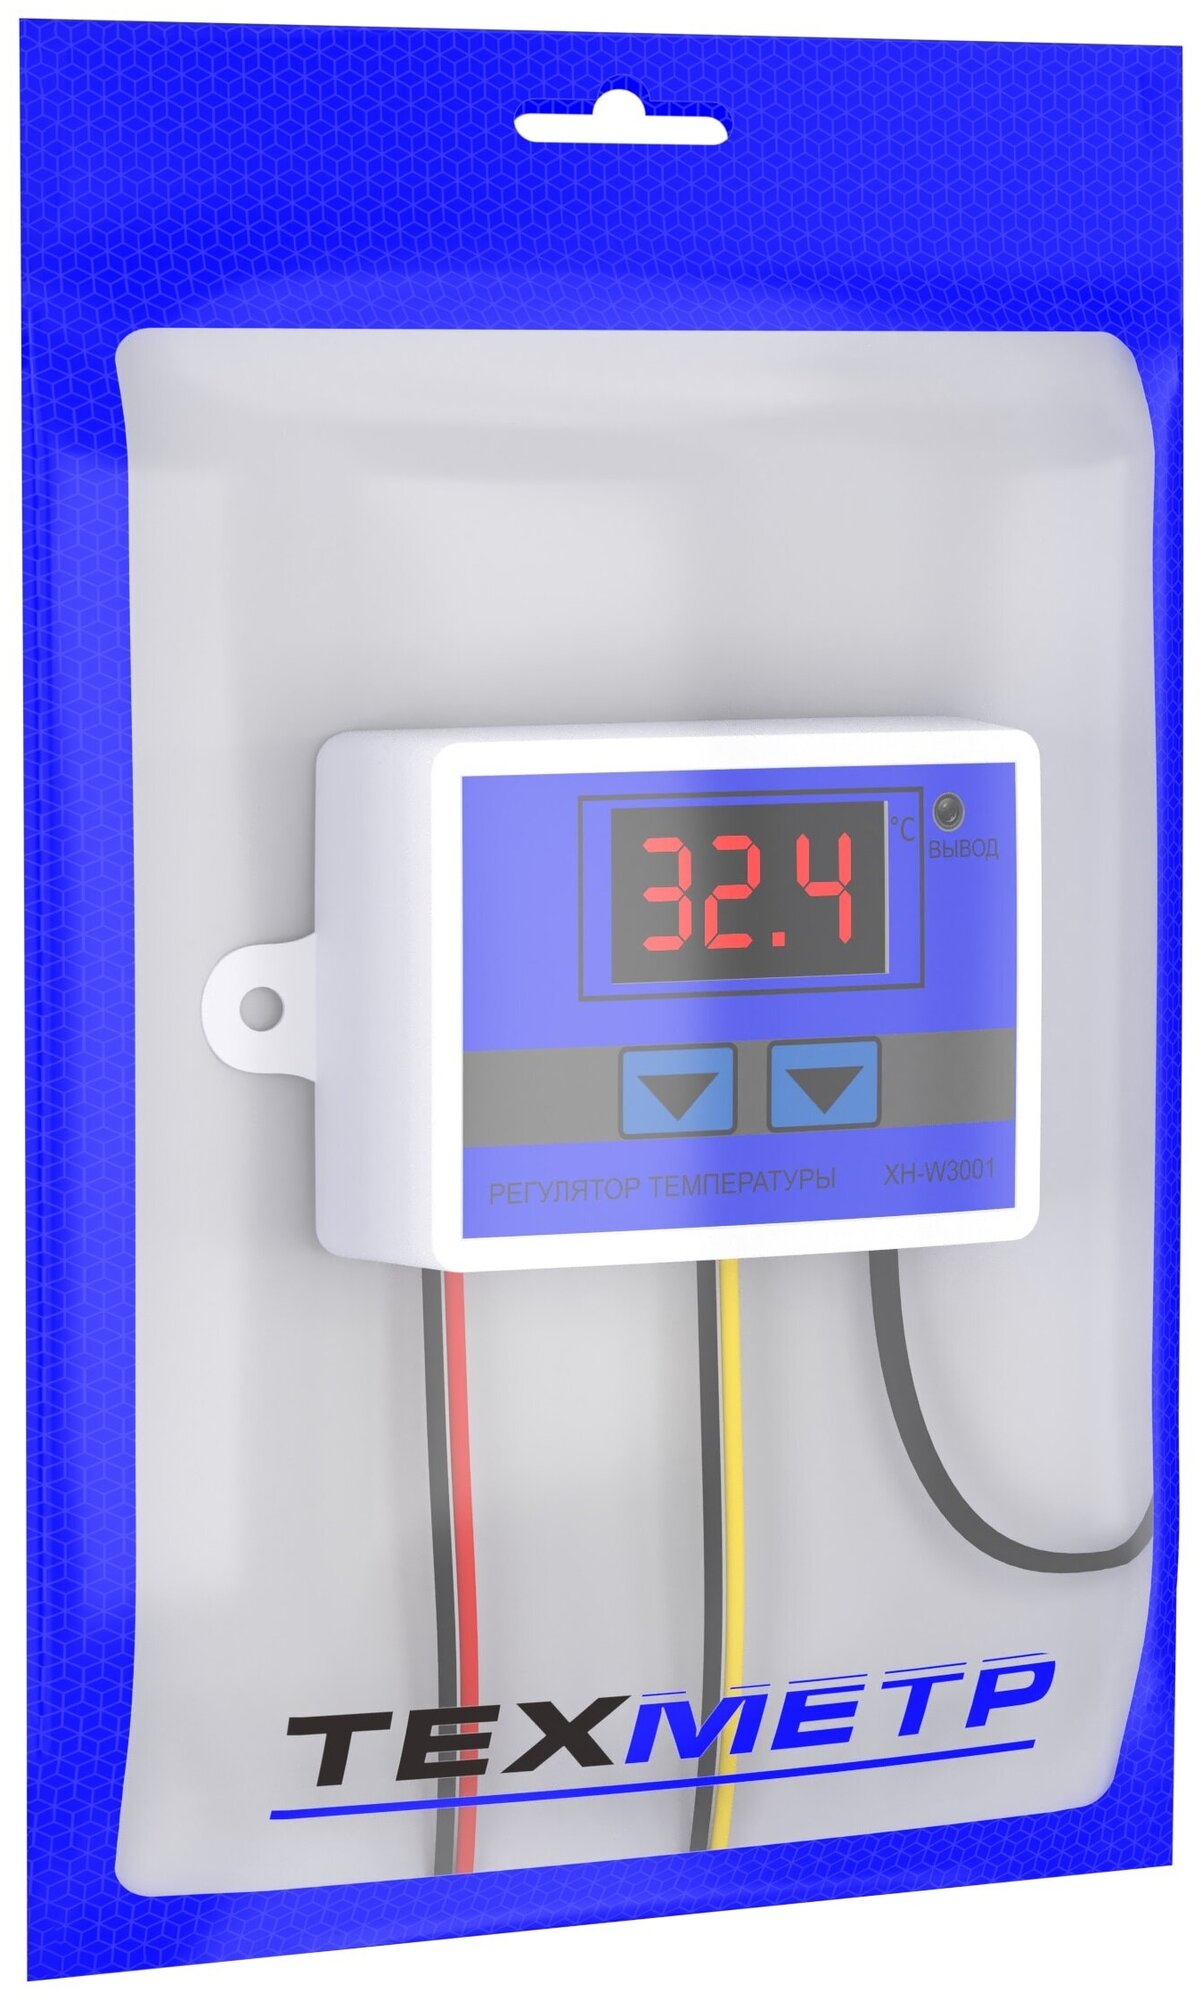 Терморегулятор термостат контроллер температуры с соединительными клеммами (4 штуки) техметр XH-W3001 110-220В 1500Вт -50+110С TRW3001 (Синий) - фотография № 9